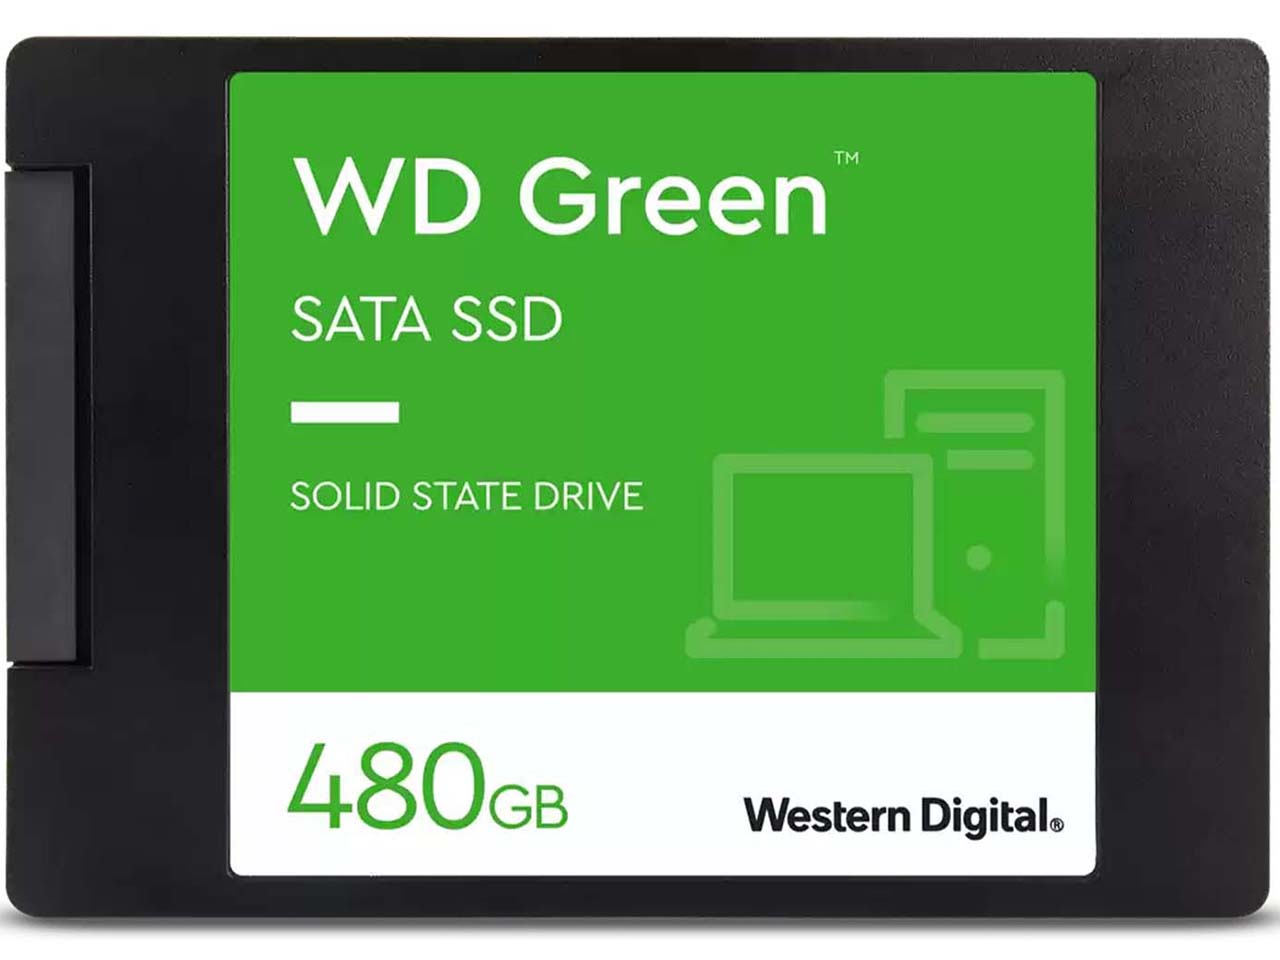 خرید اینترنتی اس اس دی اینترنال وسترن دیجیتال مدل WD Green ظرفیت 480 گیگابایت از فروشگاه شاپ ام آی تی